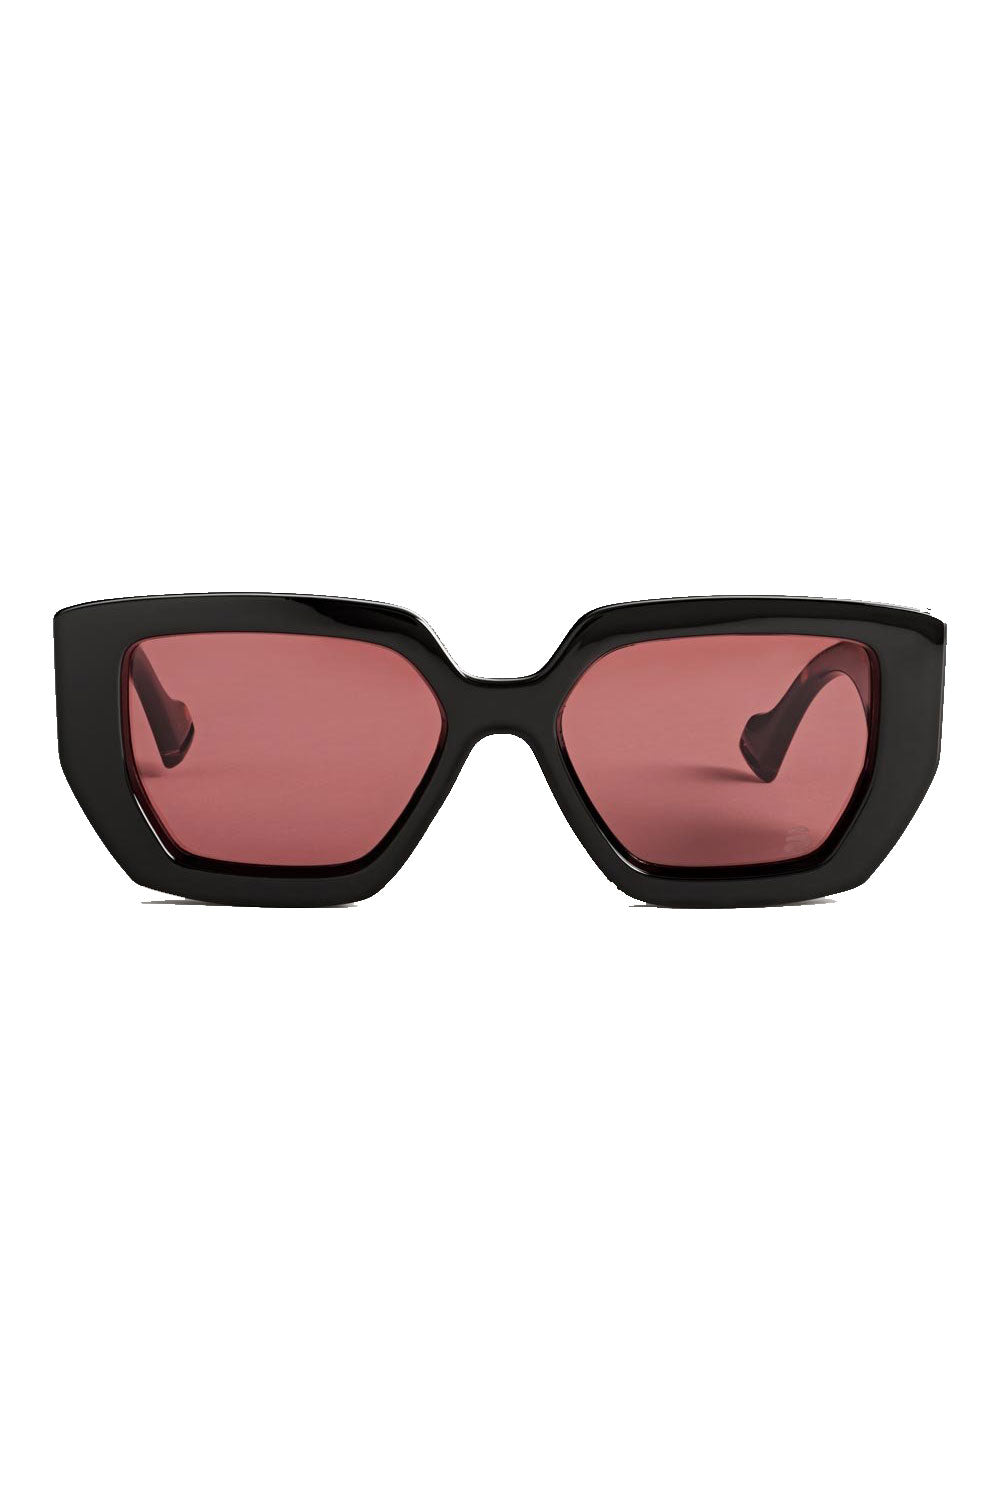 Szade Lowen Sunglasses